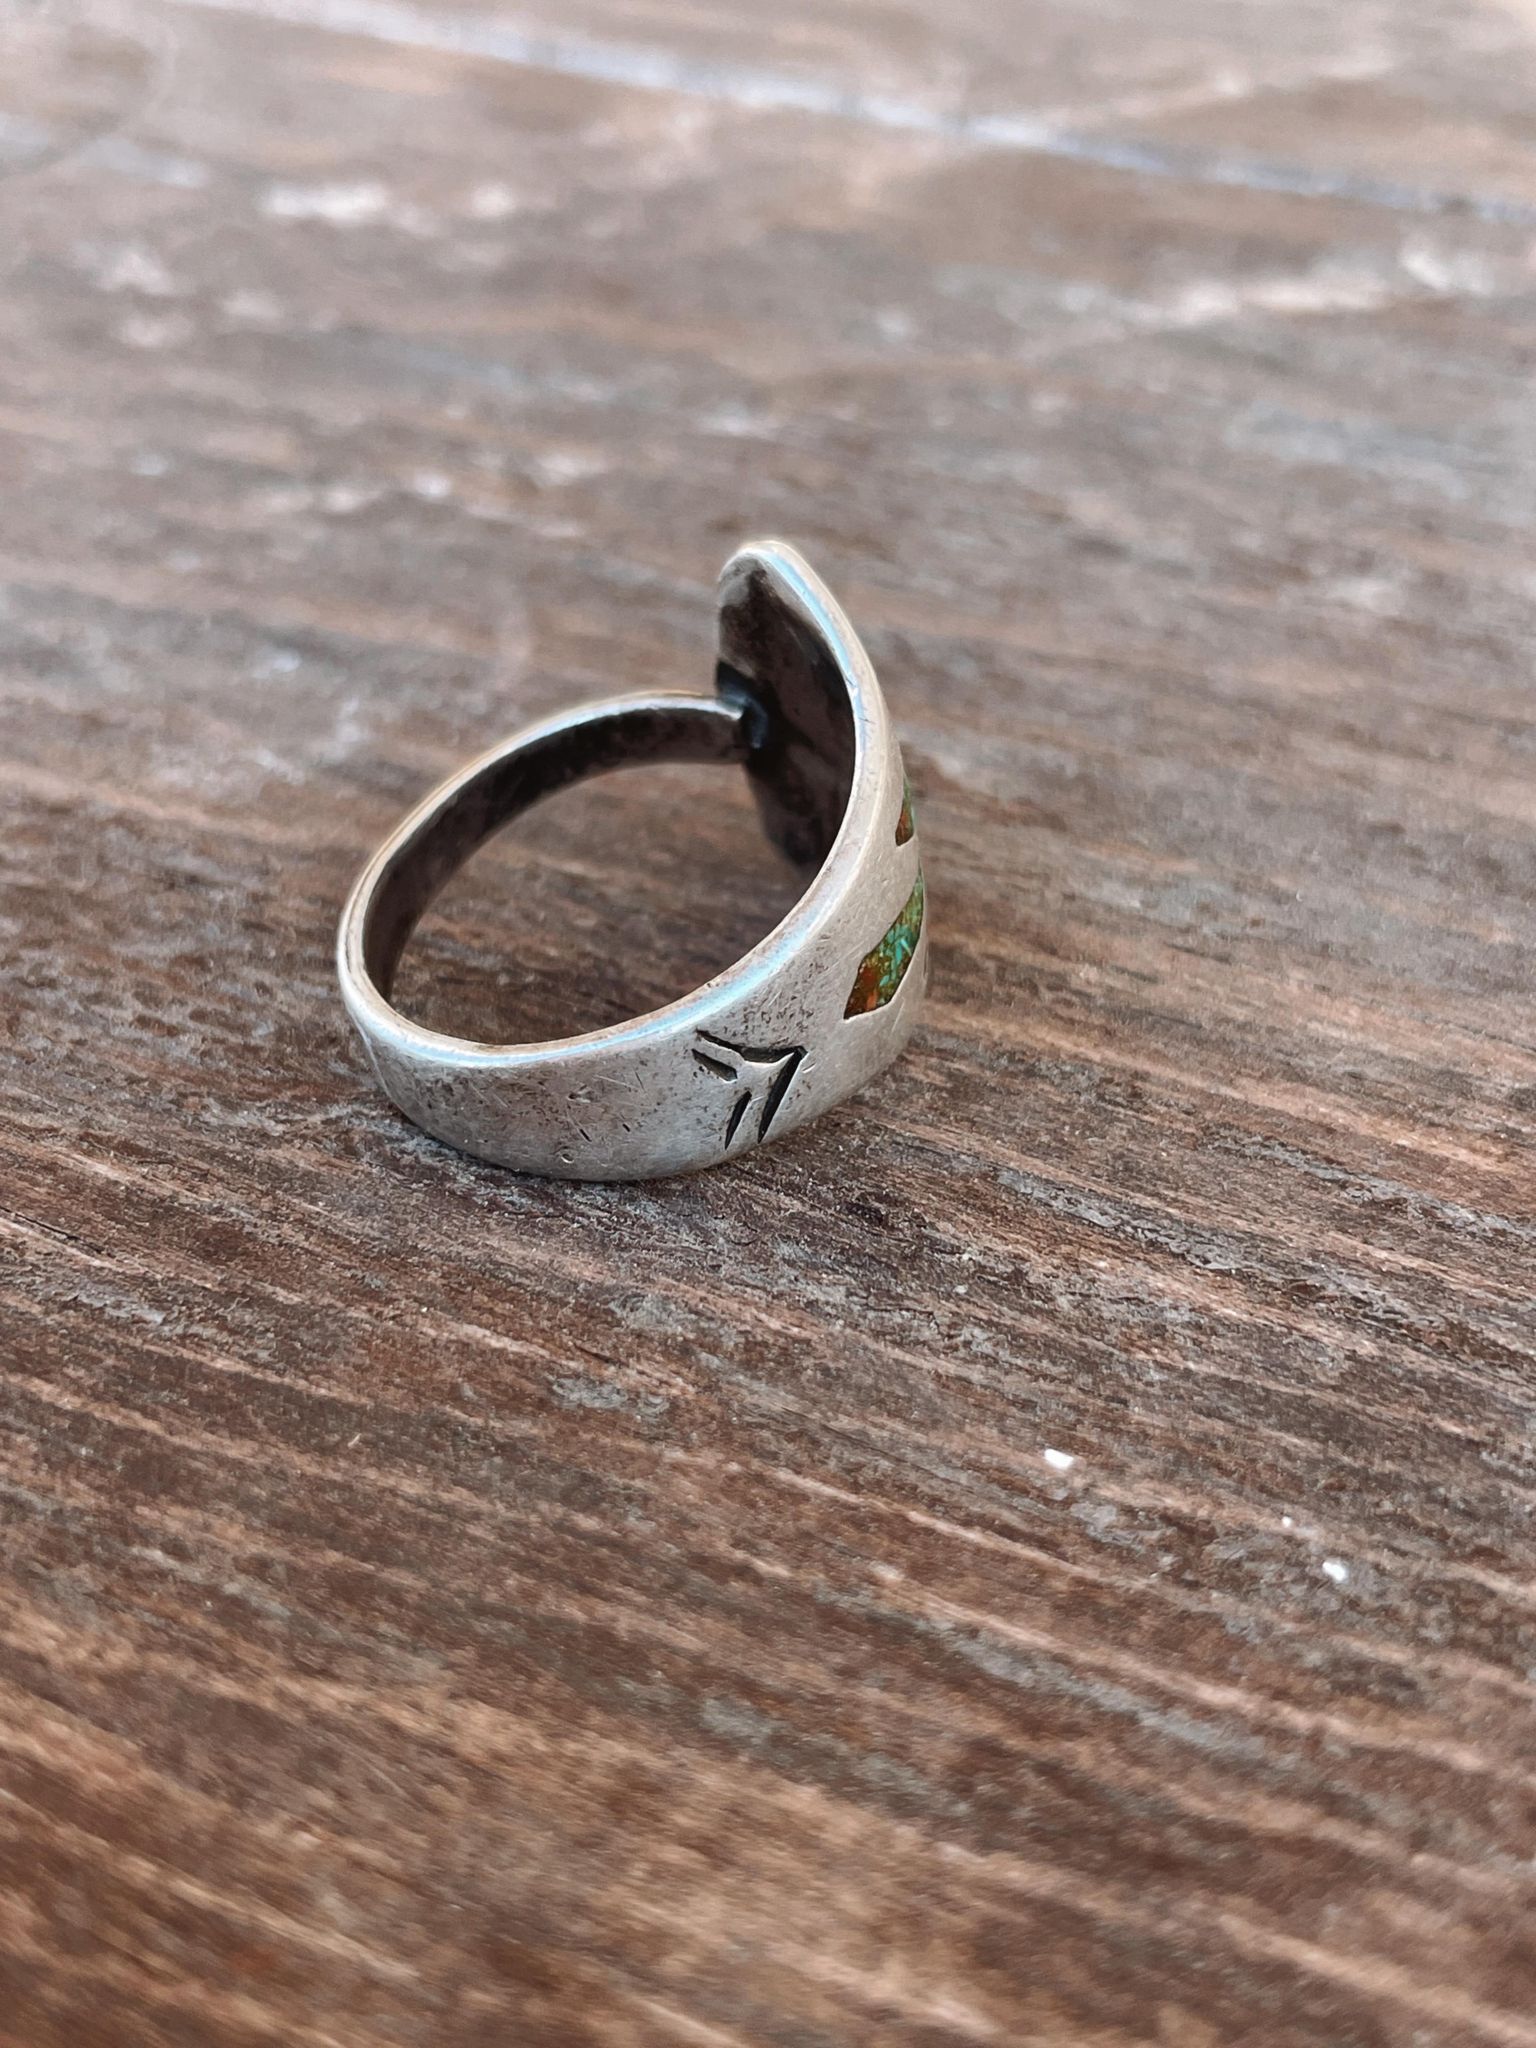 Vintage Zuni Ring